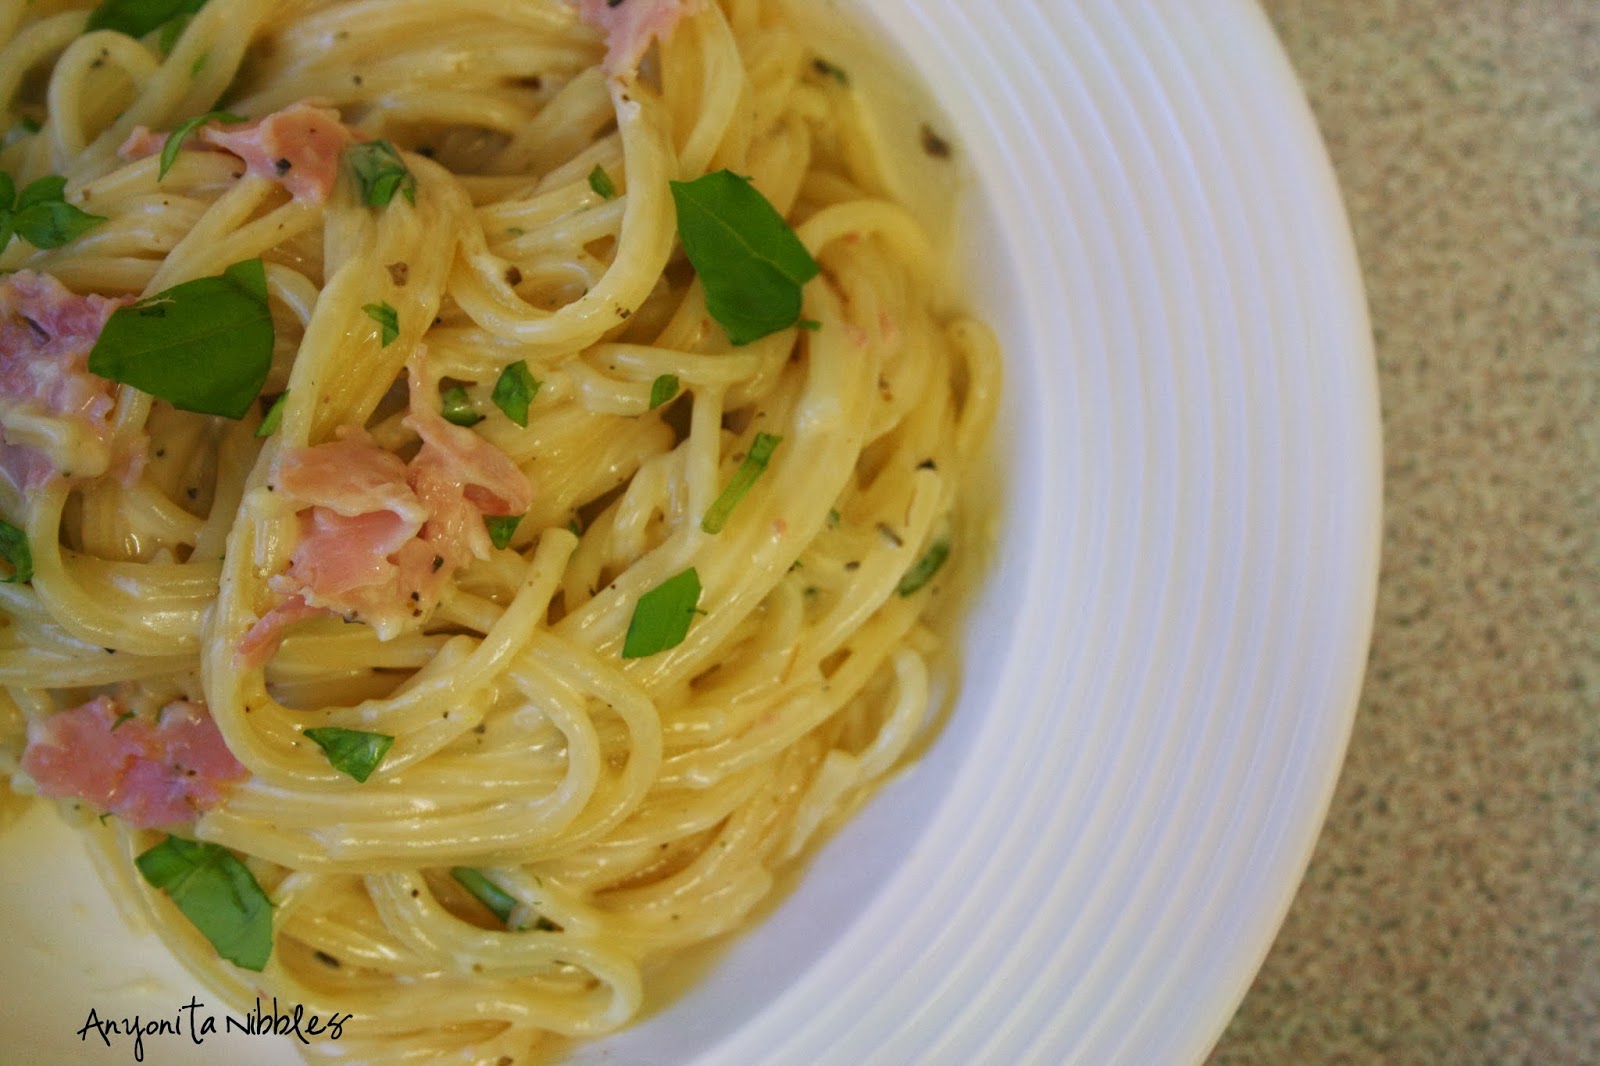 Anyonita Nibbles | Gluten Free Recipes : Gluten Free White Spaghetti ...